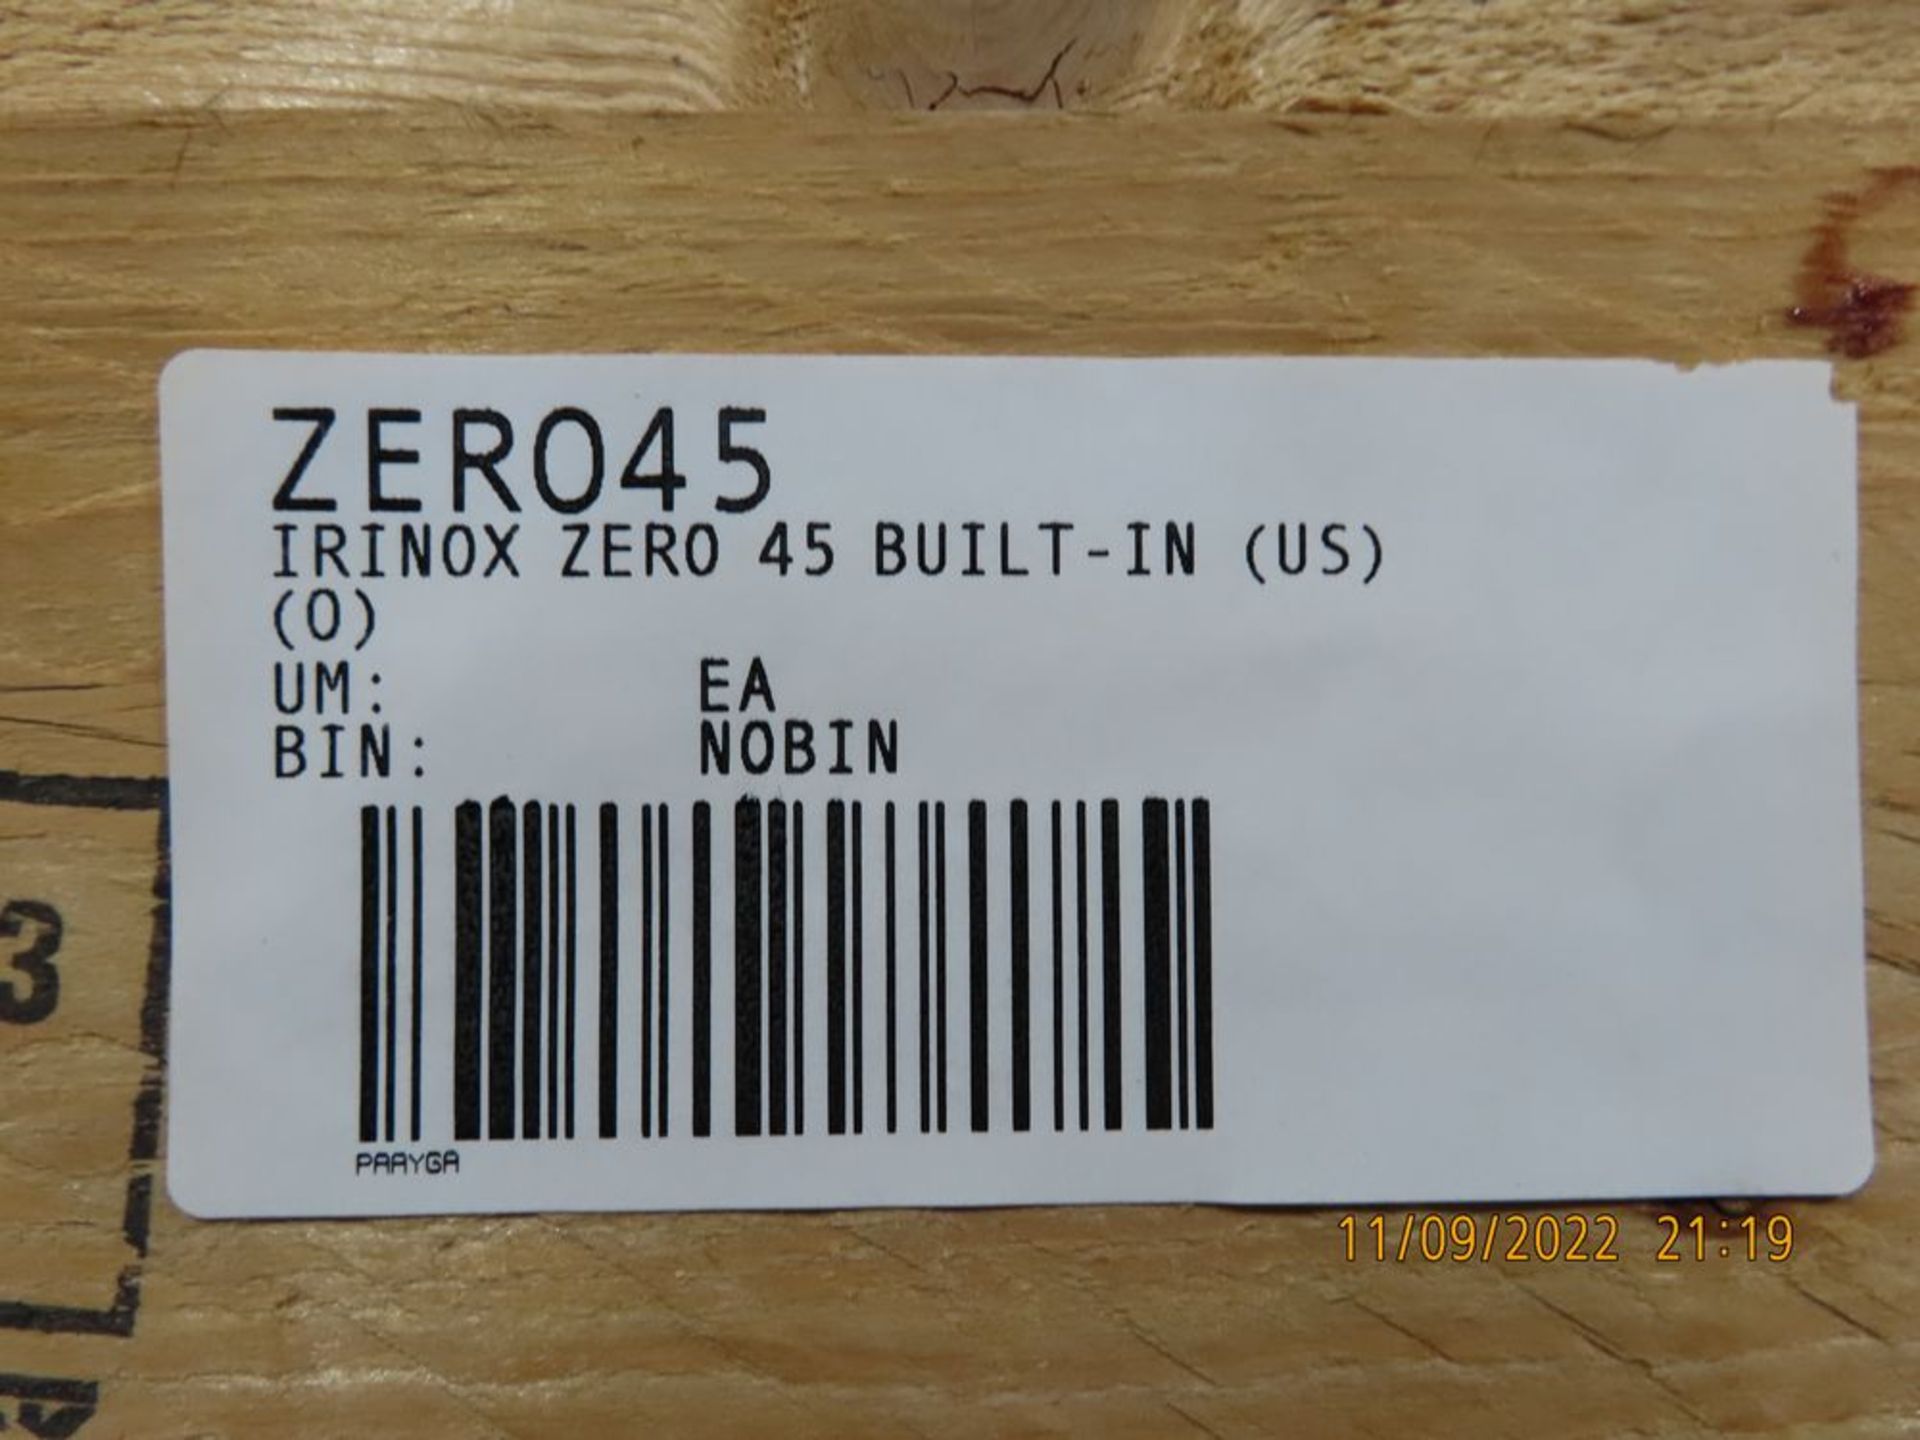 Irinox Zero Built-In Vacuum Sealer, 45'', Black Frame, (US) - Image 3 of 4